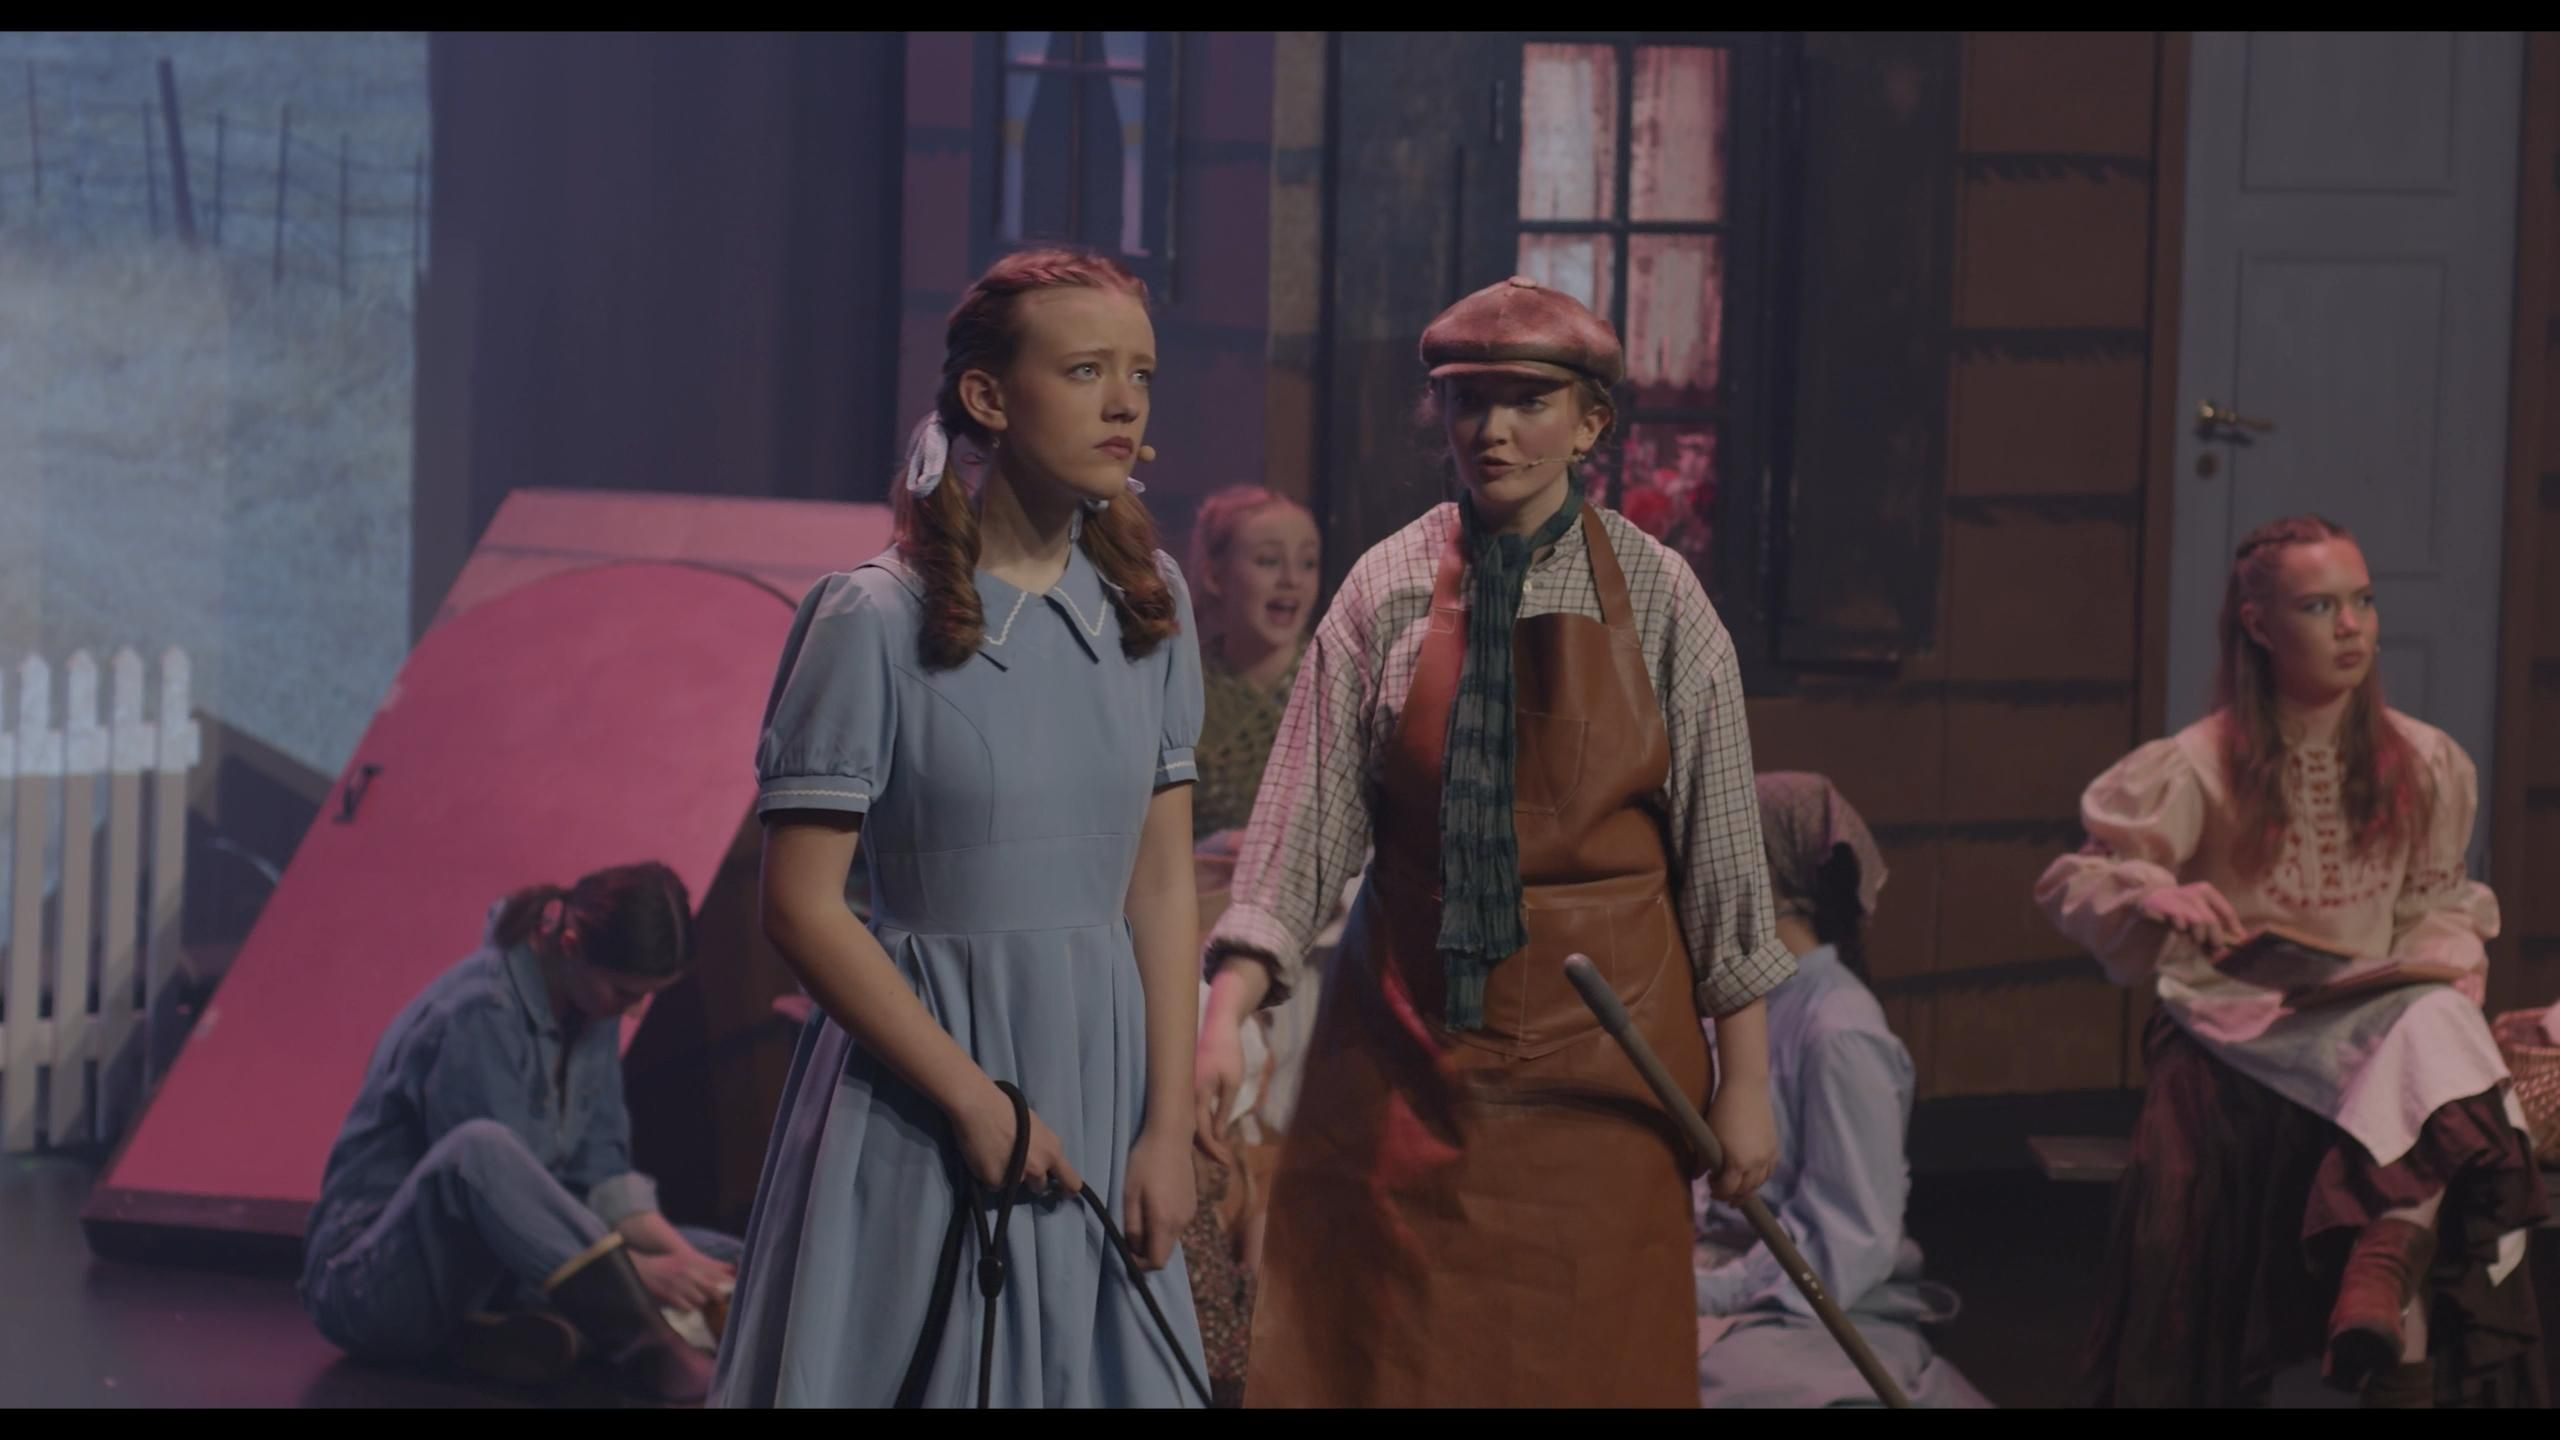 Dorothy på scene med andre i kostyme